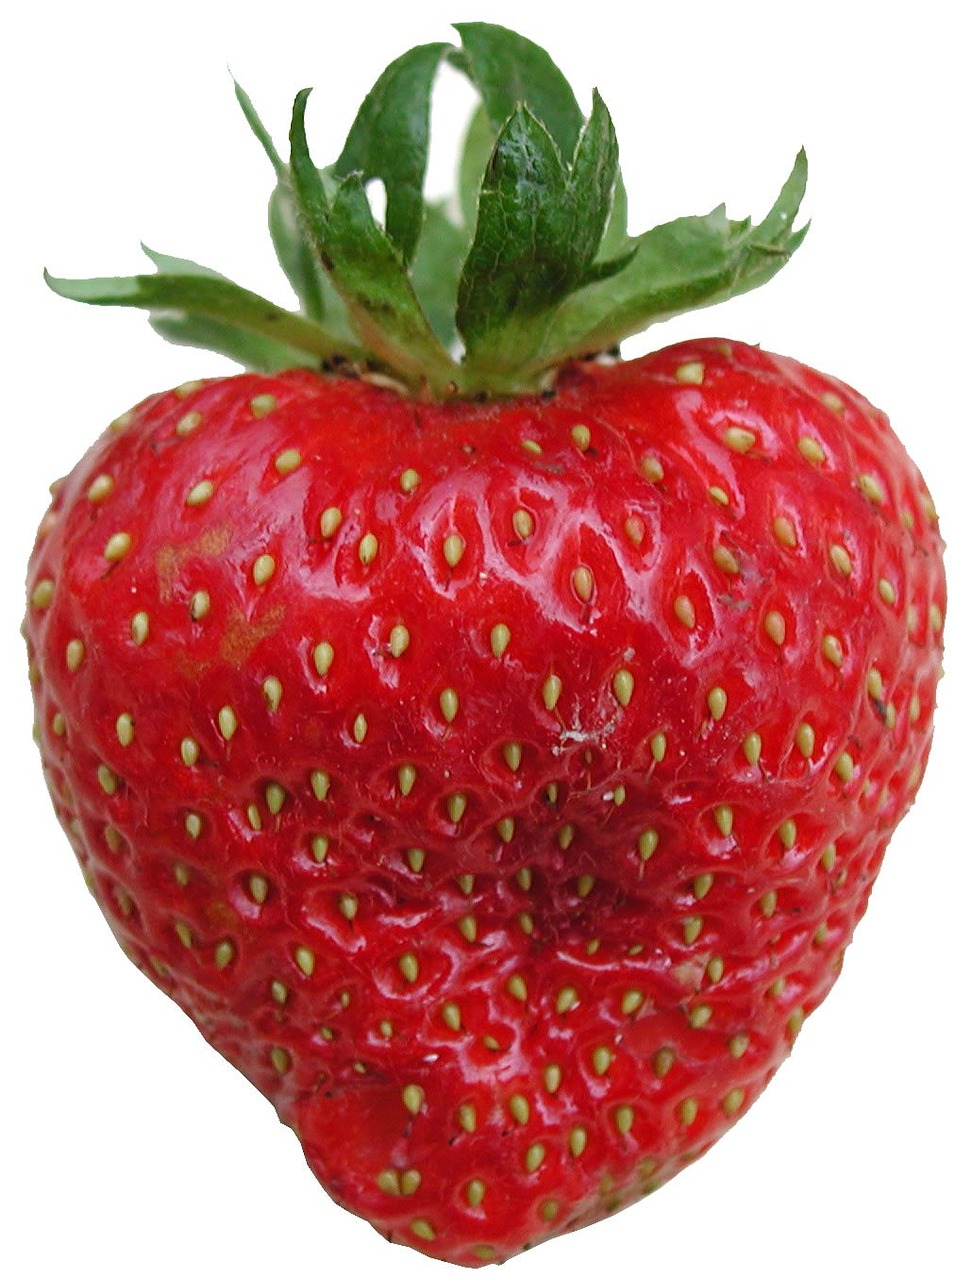 strawberry tasty frisch free photo